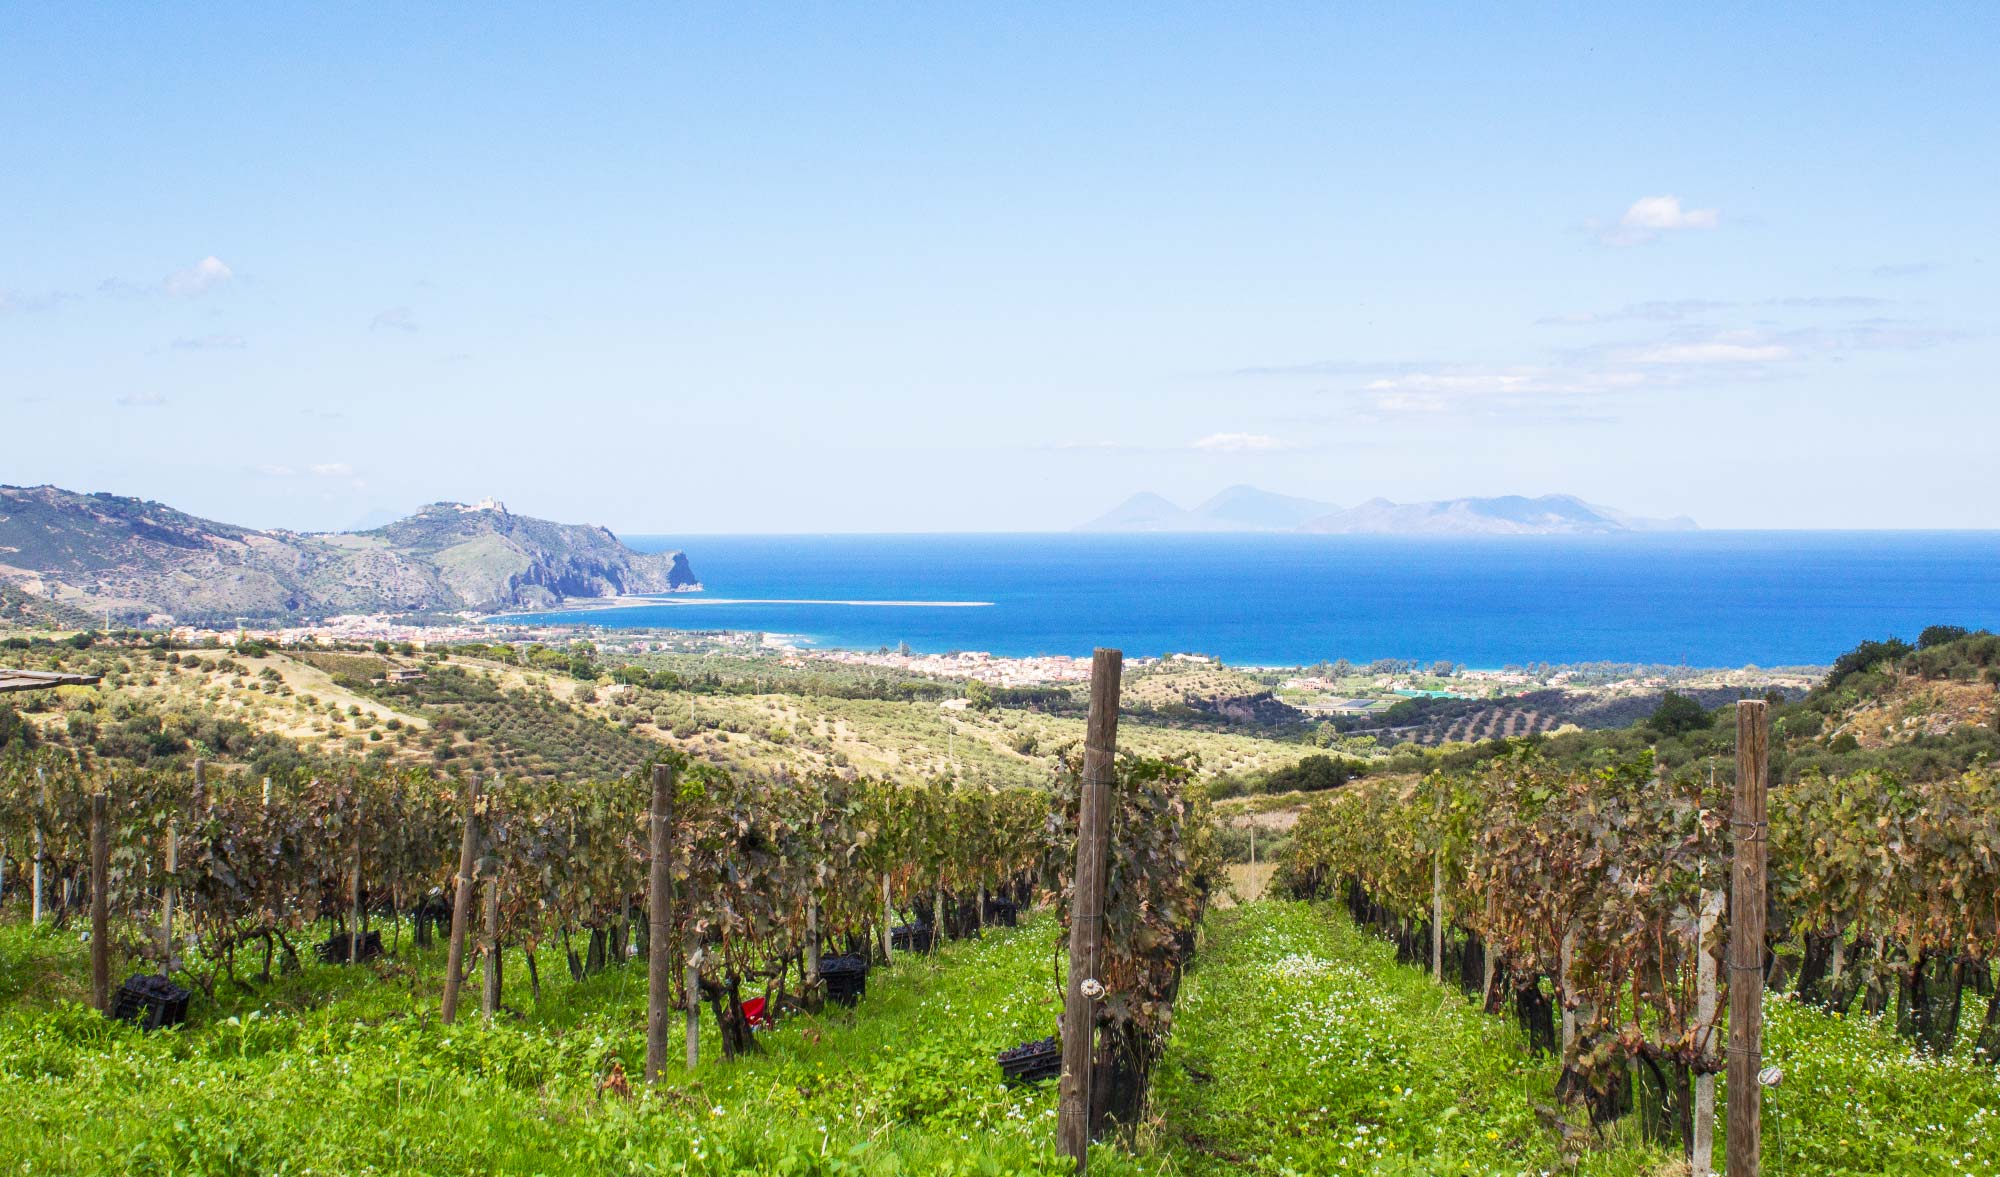 Marsala (Sicilia) acoge la primera Sesión de cata de Vinos Dulces y Generosos del Concours Mondial de Bruxelles